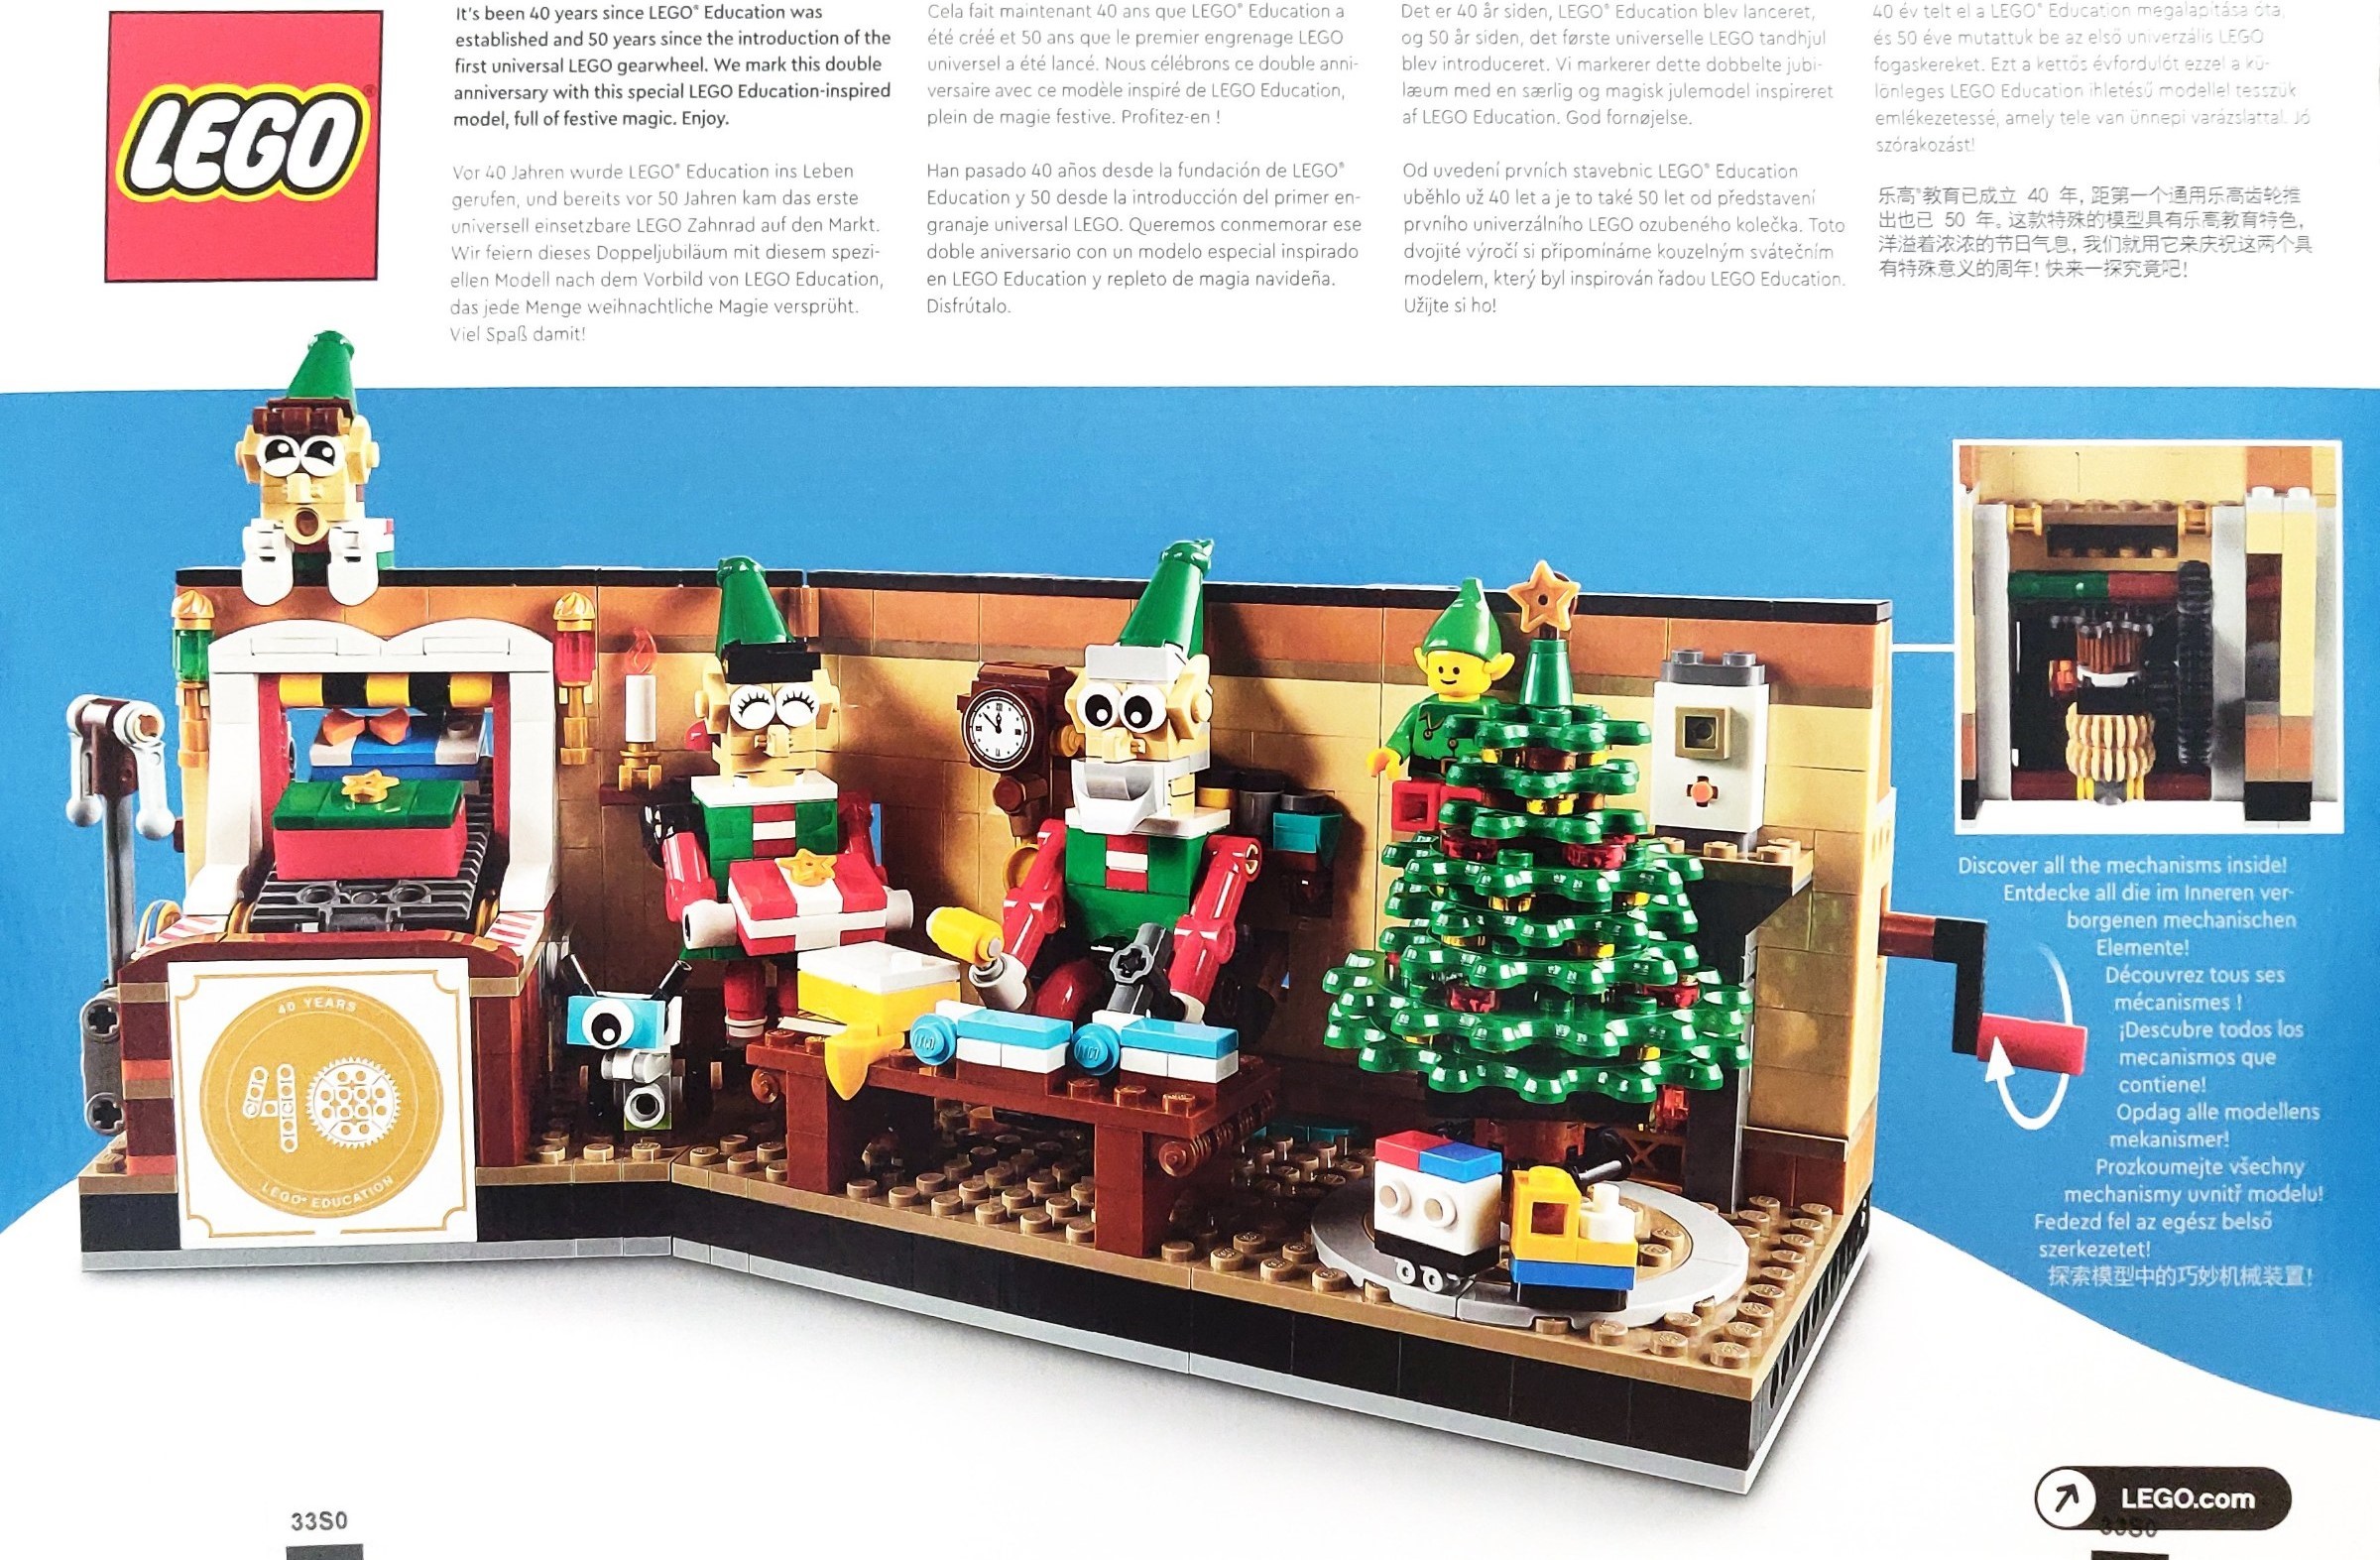 LEGO® Employee Christmas Gift 40 Years of handson learning